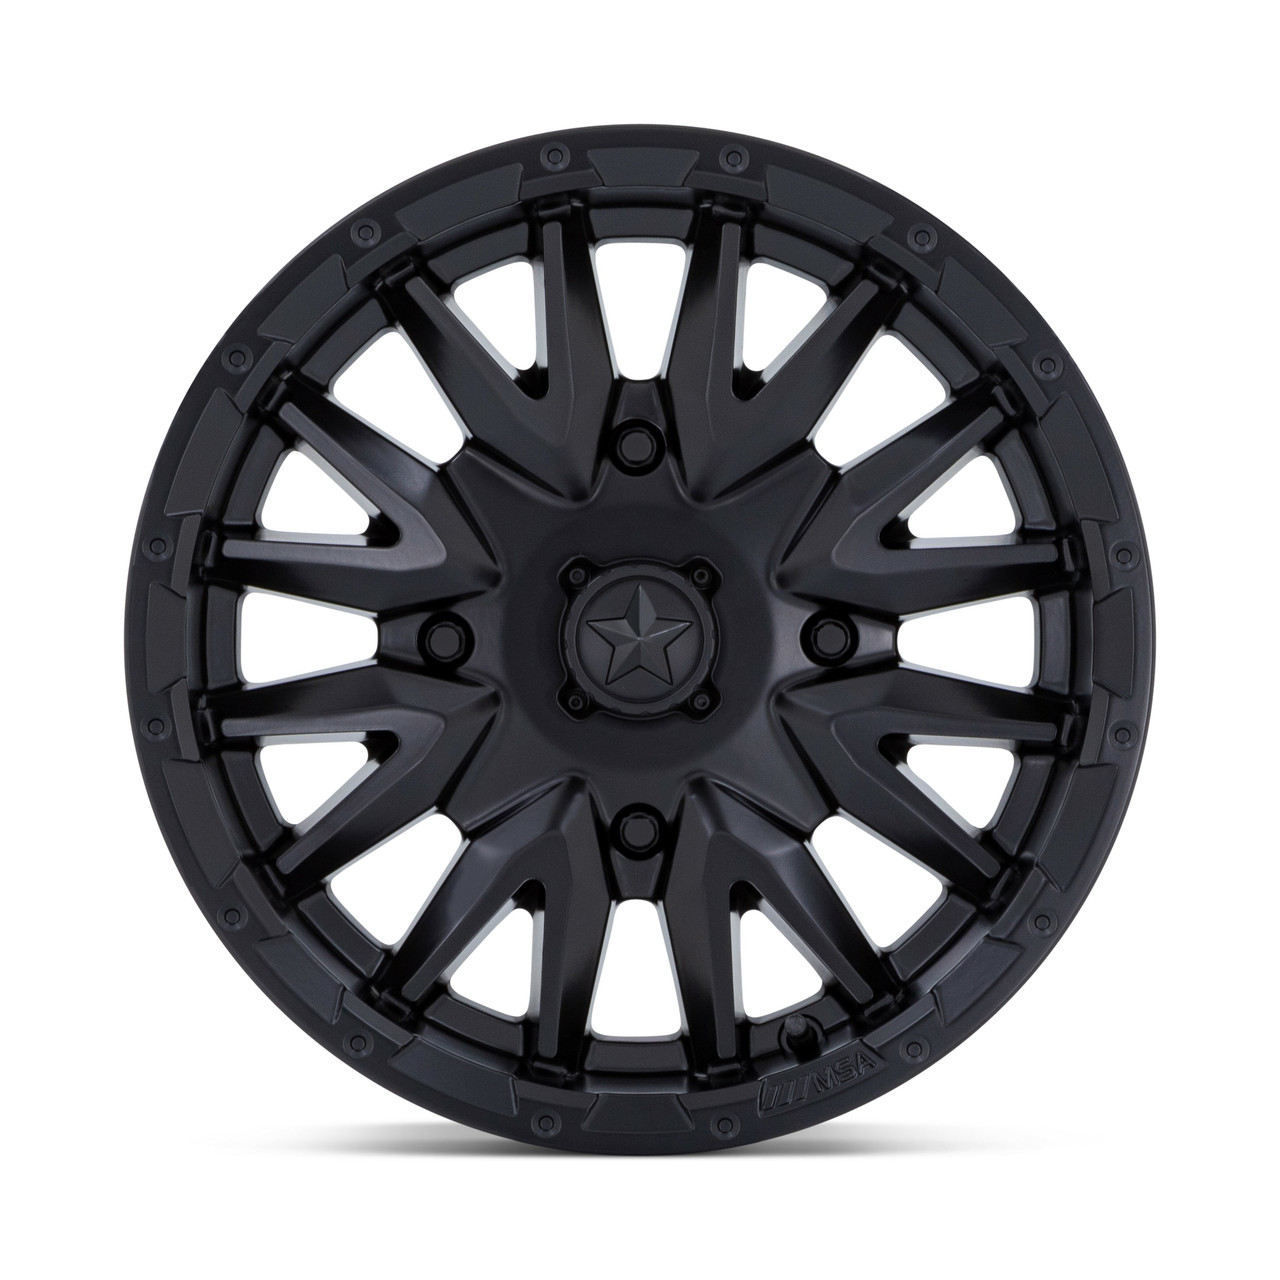 14x7 4x110 Matte Black Wheel MSA Offroad Wheels M49 Creed Rim -47mm